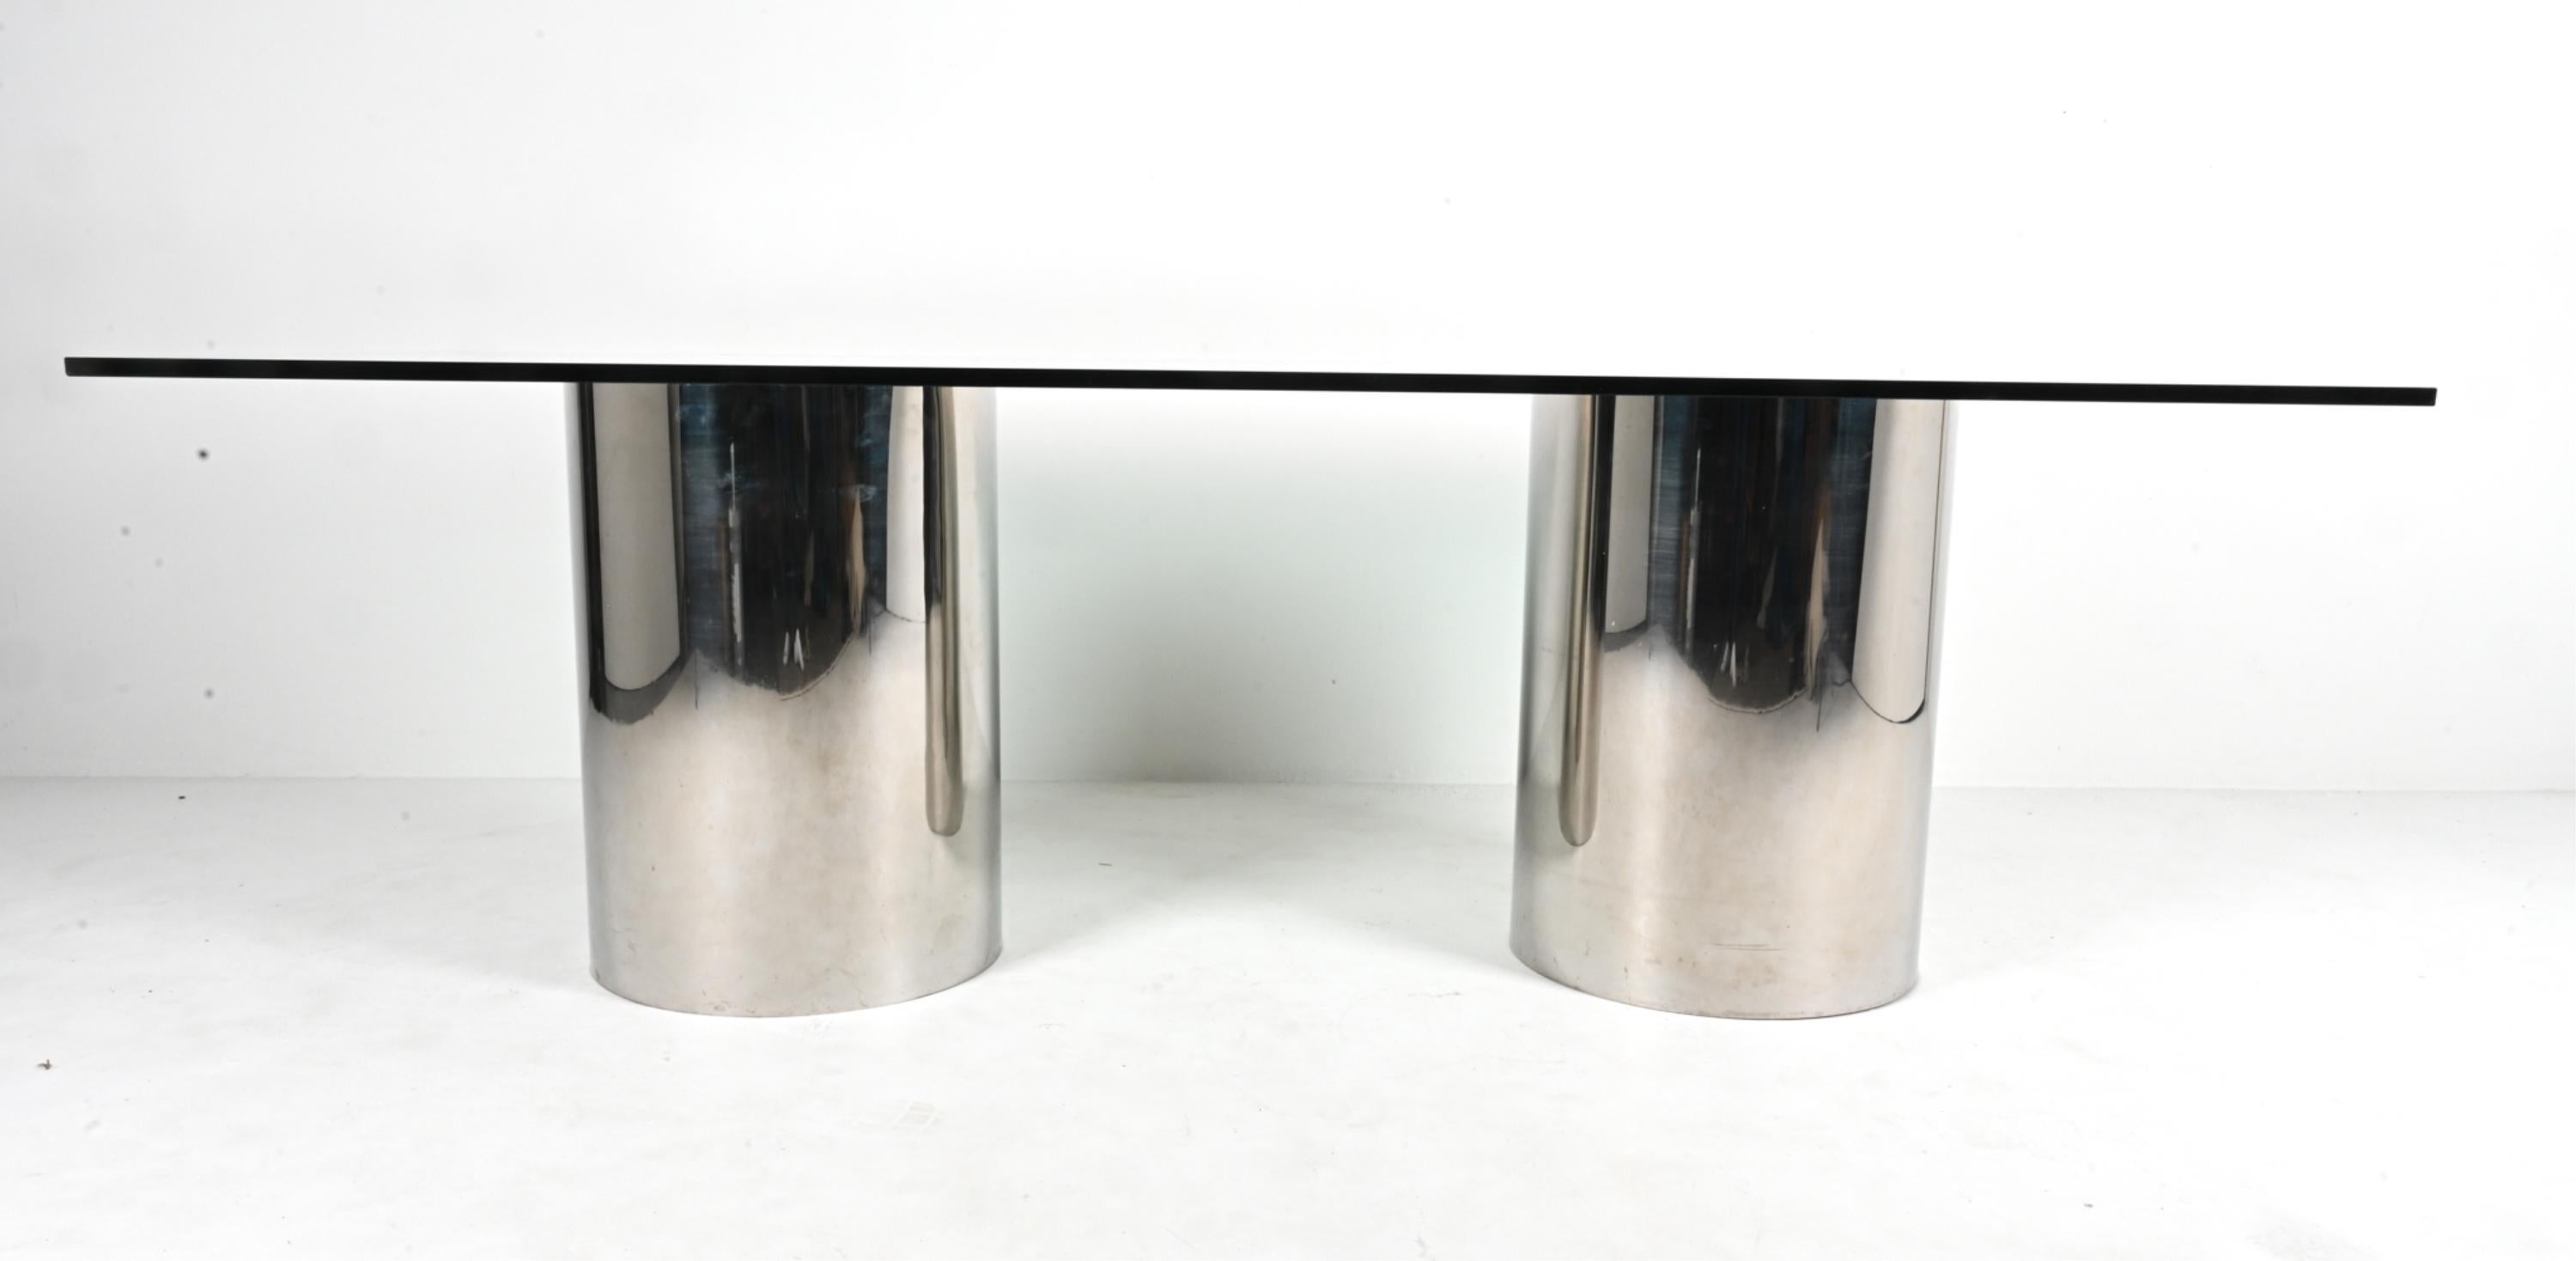 Exemplaire de l'élégance moderne minimaliste, cette rare table de salle à manger documentée de la série Drum de Brueton présente un plateau rectangulaire en verre trempé soutenu par deux piédestaux cylindriques en pin robuste, revêtus d'acier